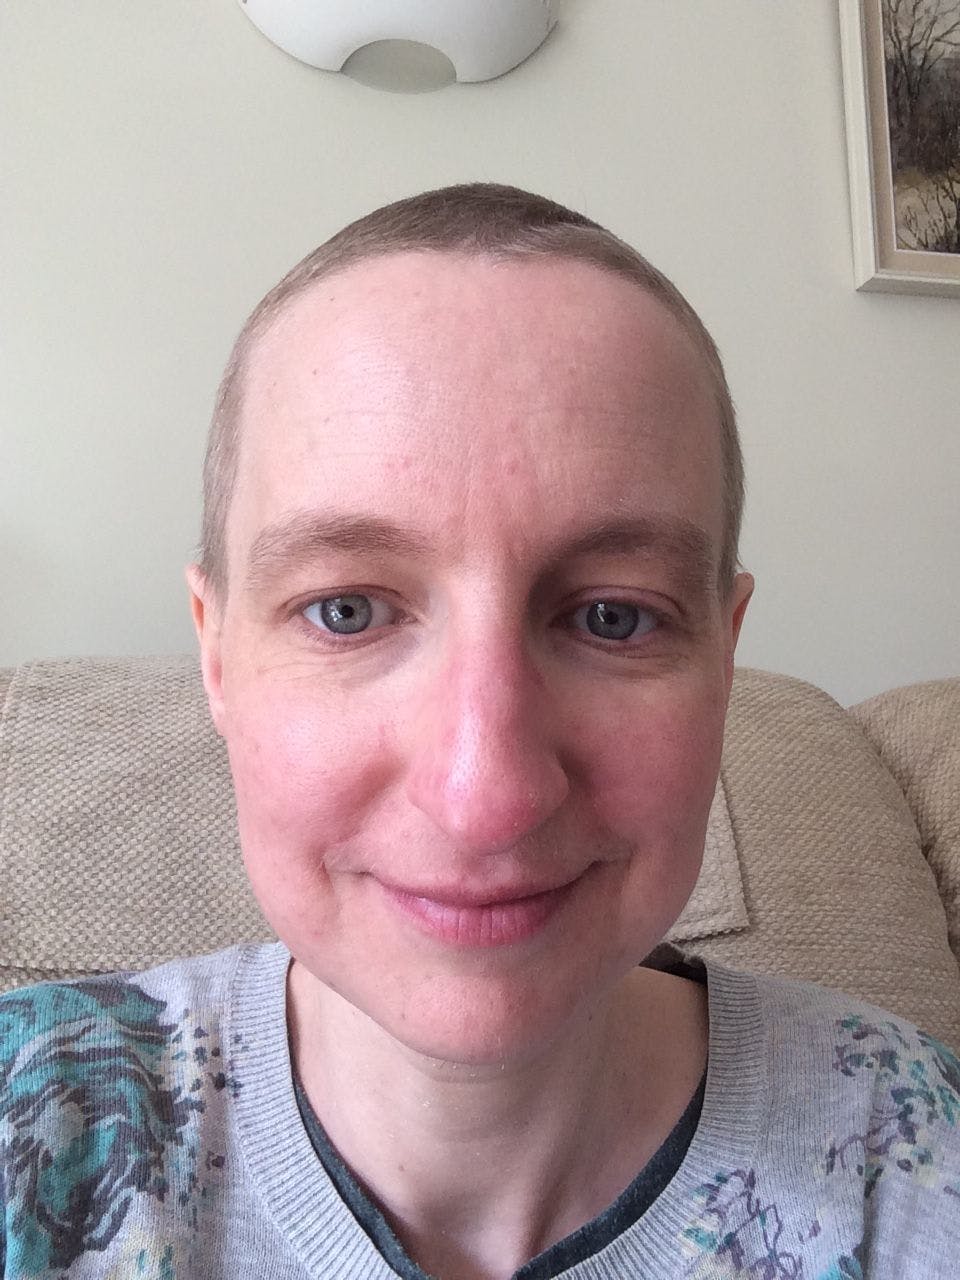 Cancer survivor Jenni Elbourne on growing her hair back